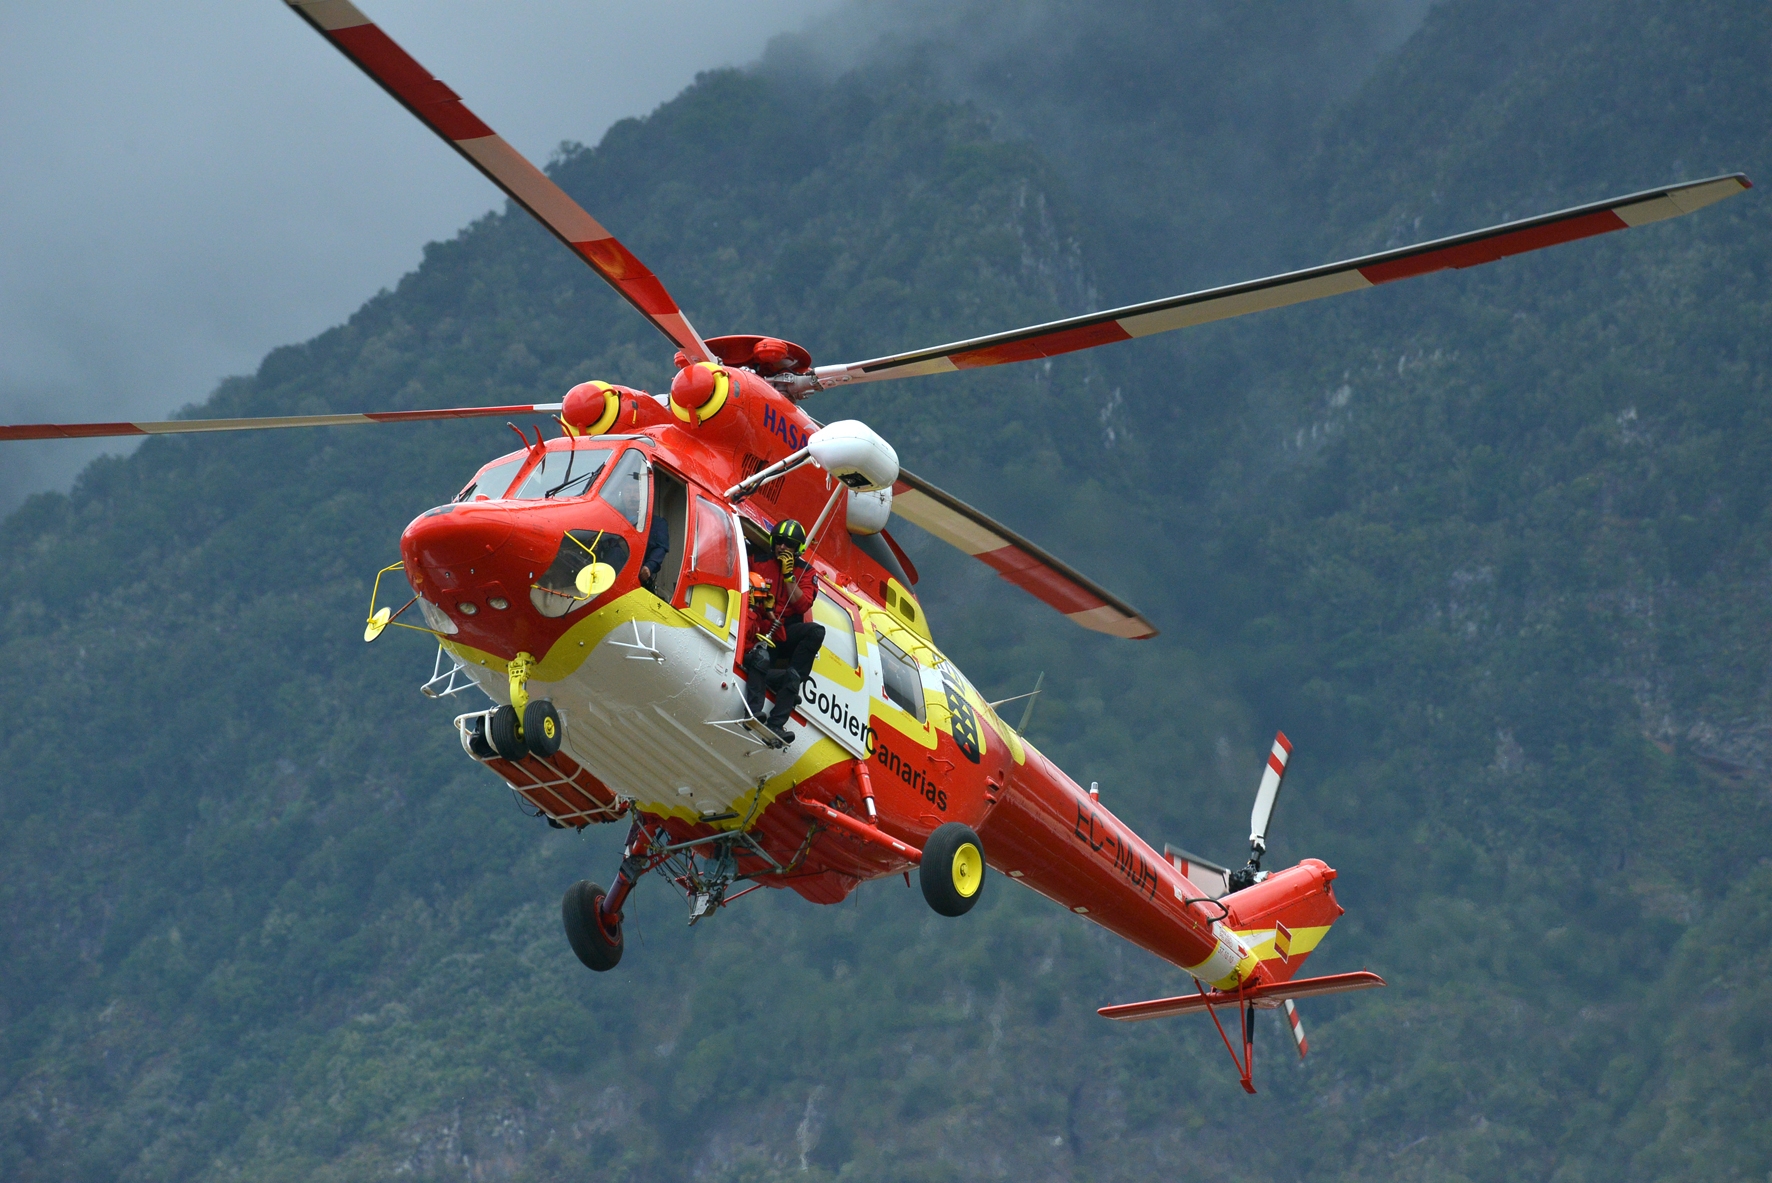 El Hierro contabiliza 45% de los transportes urgentes en helicóptero con destino La Candelaria